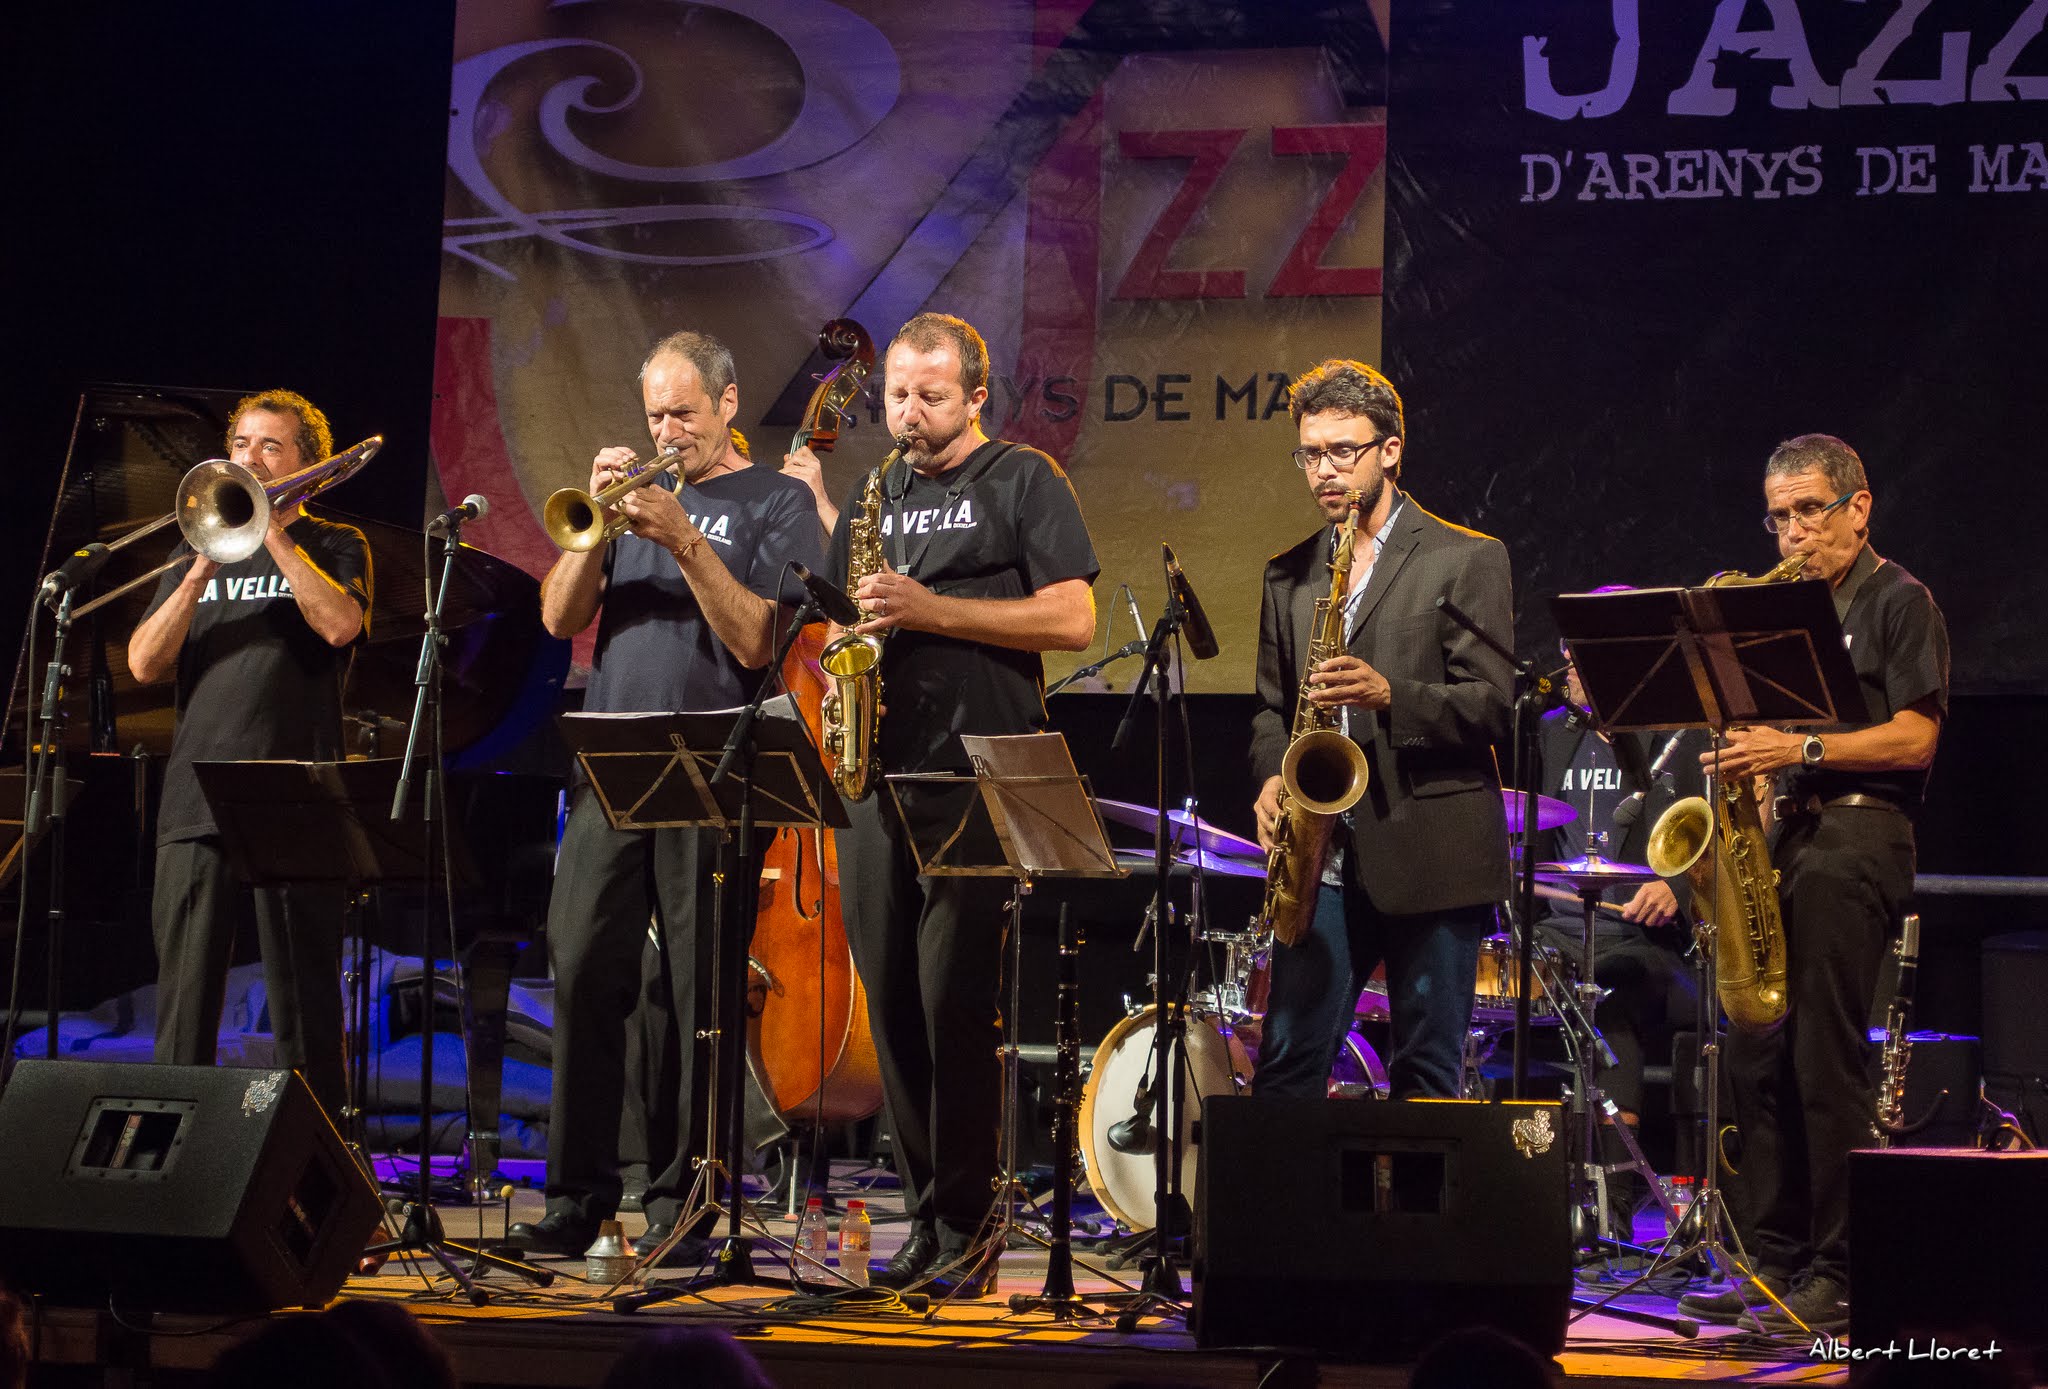 Imatges del 25 Festival de Jazz d'Arenys de Mar - 2016 - Foto 40766934